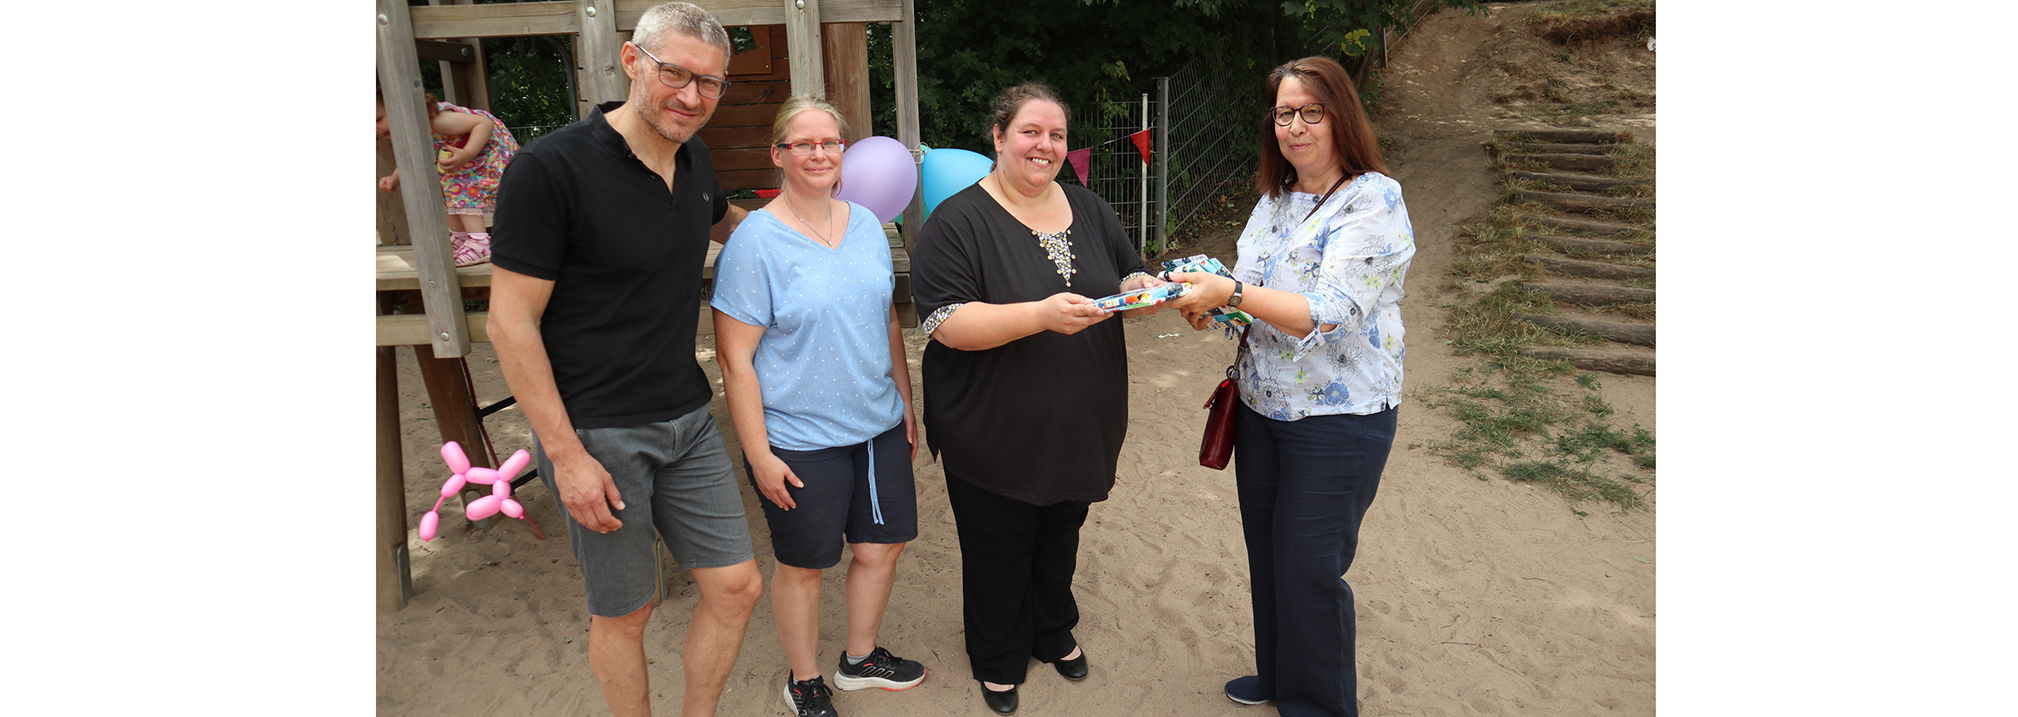 Die Kita KiKu Kinderland in Rüsselsheim feierte im Juli ihr 10-jähriges Jubiläum